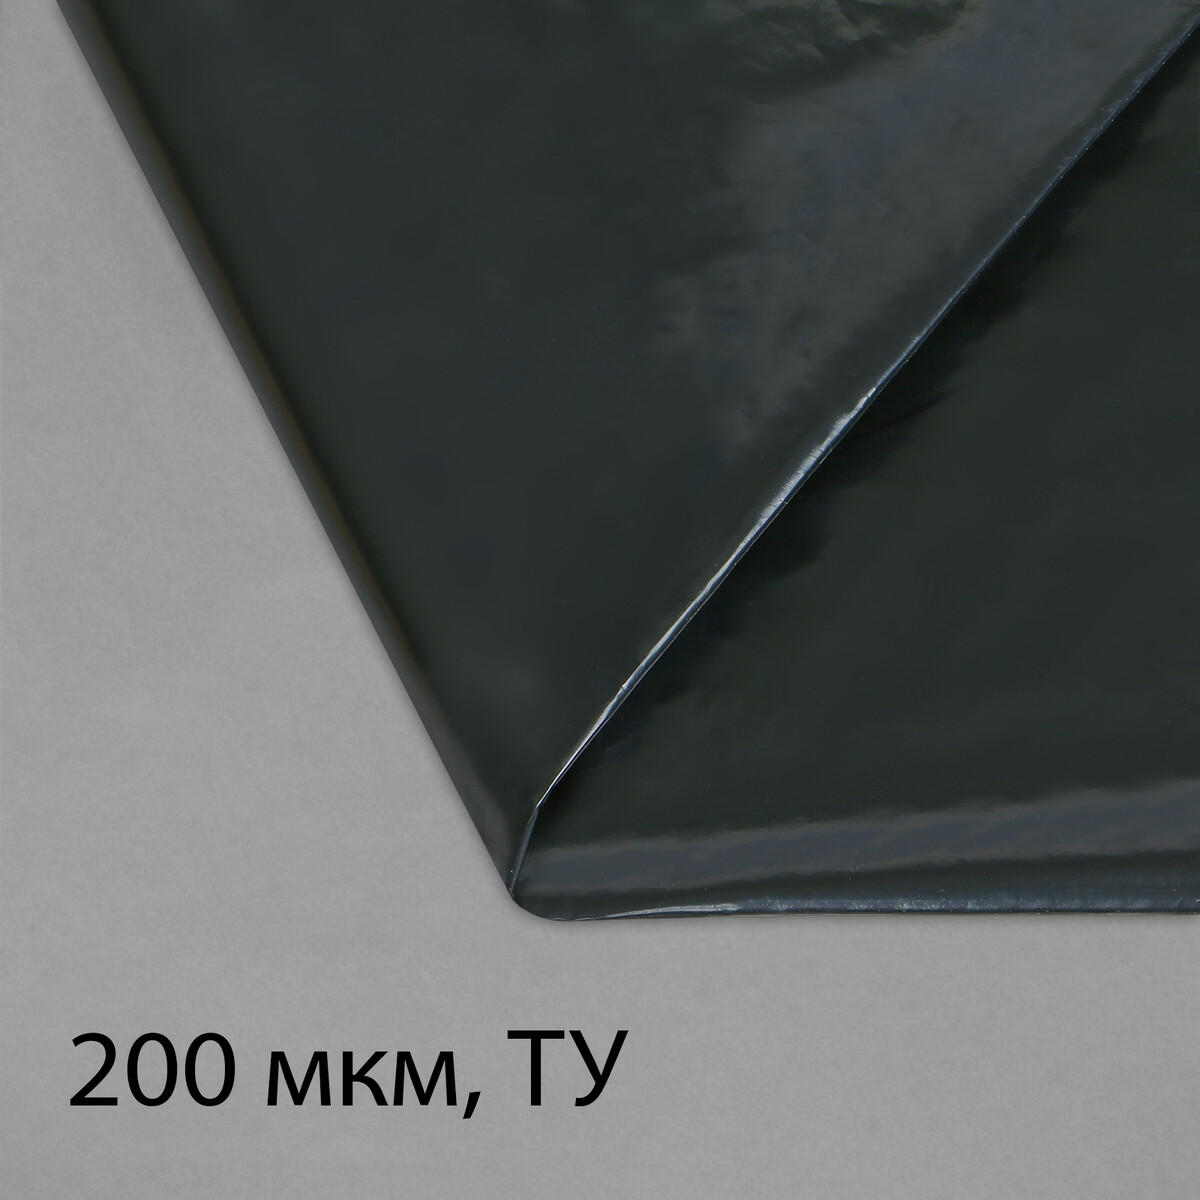 Пленка полиэтиленовая, техническая, толщина 200 мкм, 5 × 3 м, рукав (1,5 м × 2), черная, 2 сорт, эконом 50 % пленка полиэтиленовая техническая 60 мкм черная длина 10 м ширина 3 м рукав 1 5 м × 2 эконом 50%